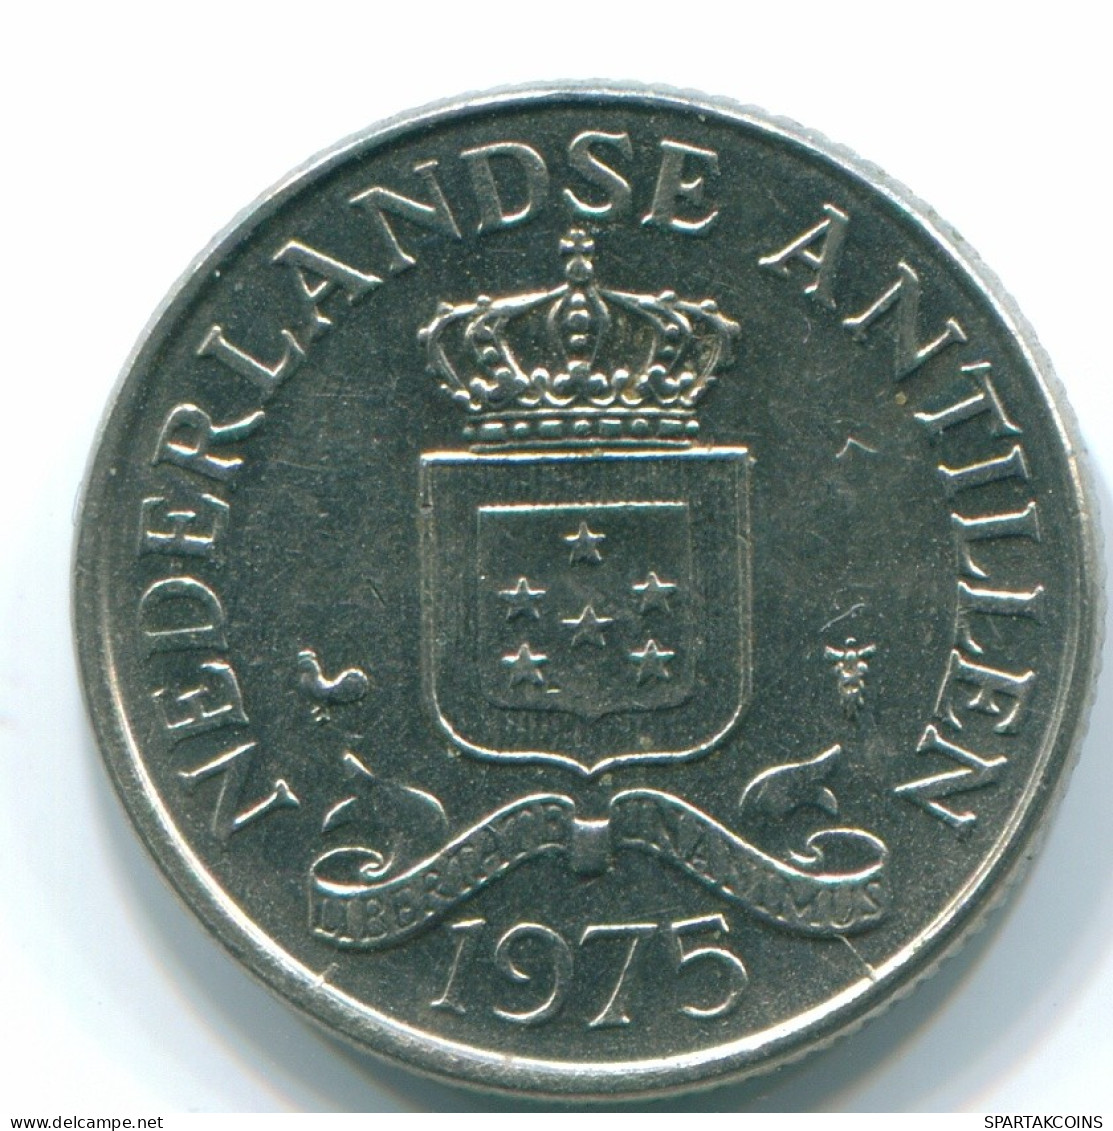 25 CENTS 1975 NIEDERLÄNDISCHE ANTILLEN Nickel Koloniale Münze #S11602.D.A - Niederländische Antillen